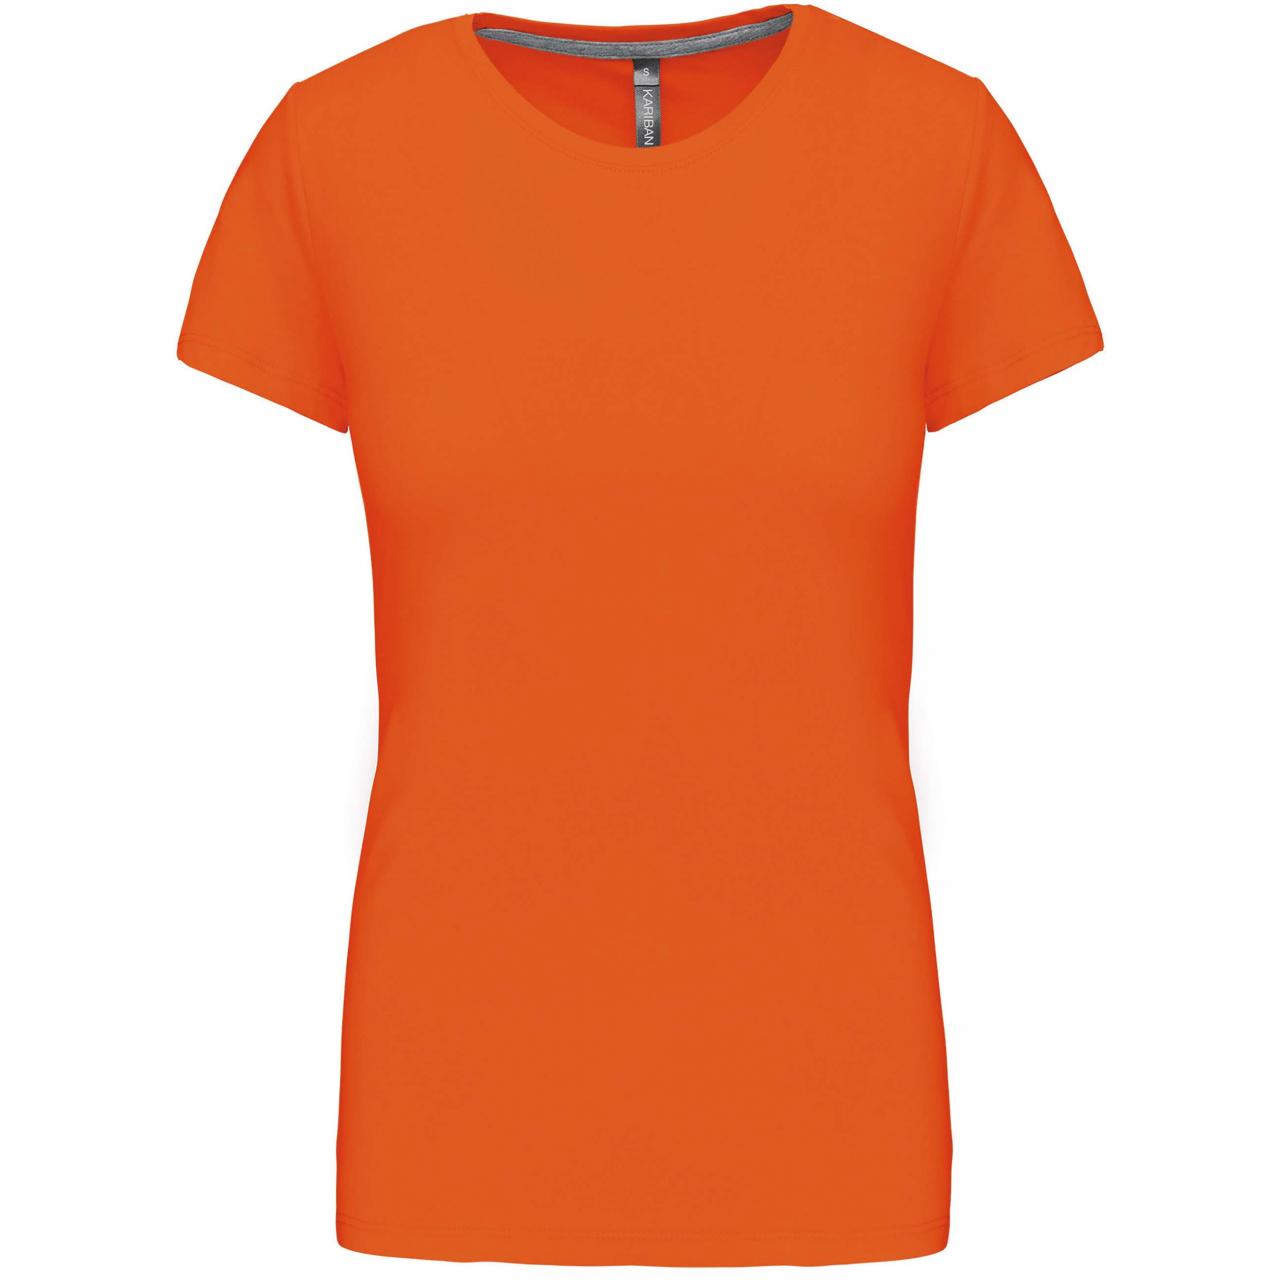 Dámské tričko Kariban s krátkým rukávem - oranžové, S